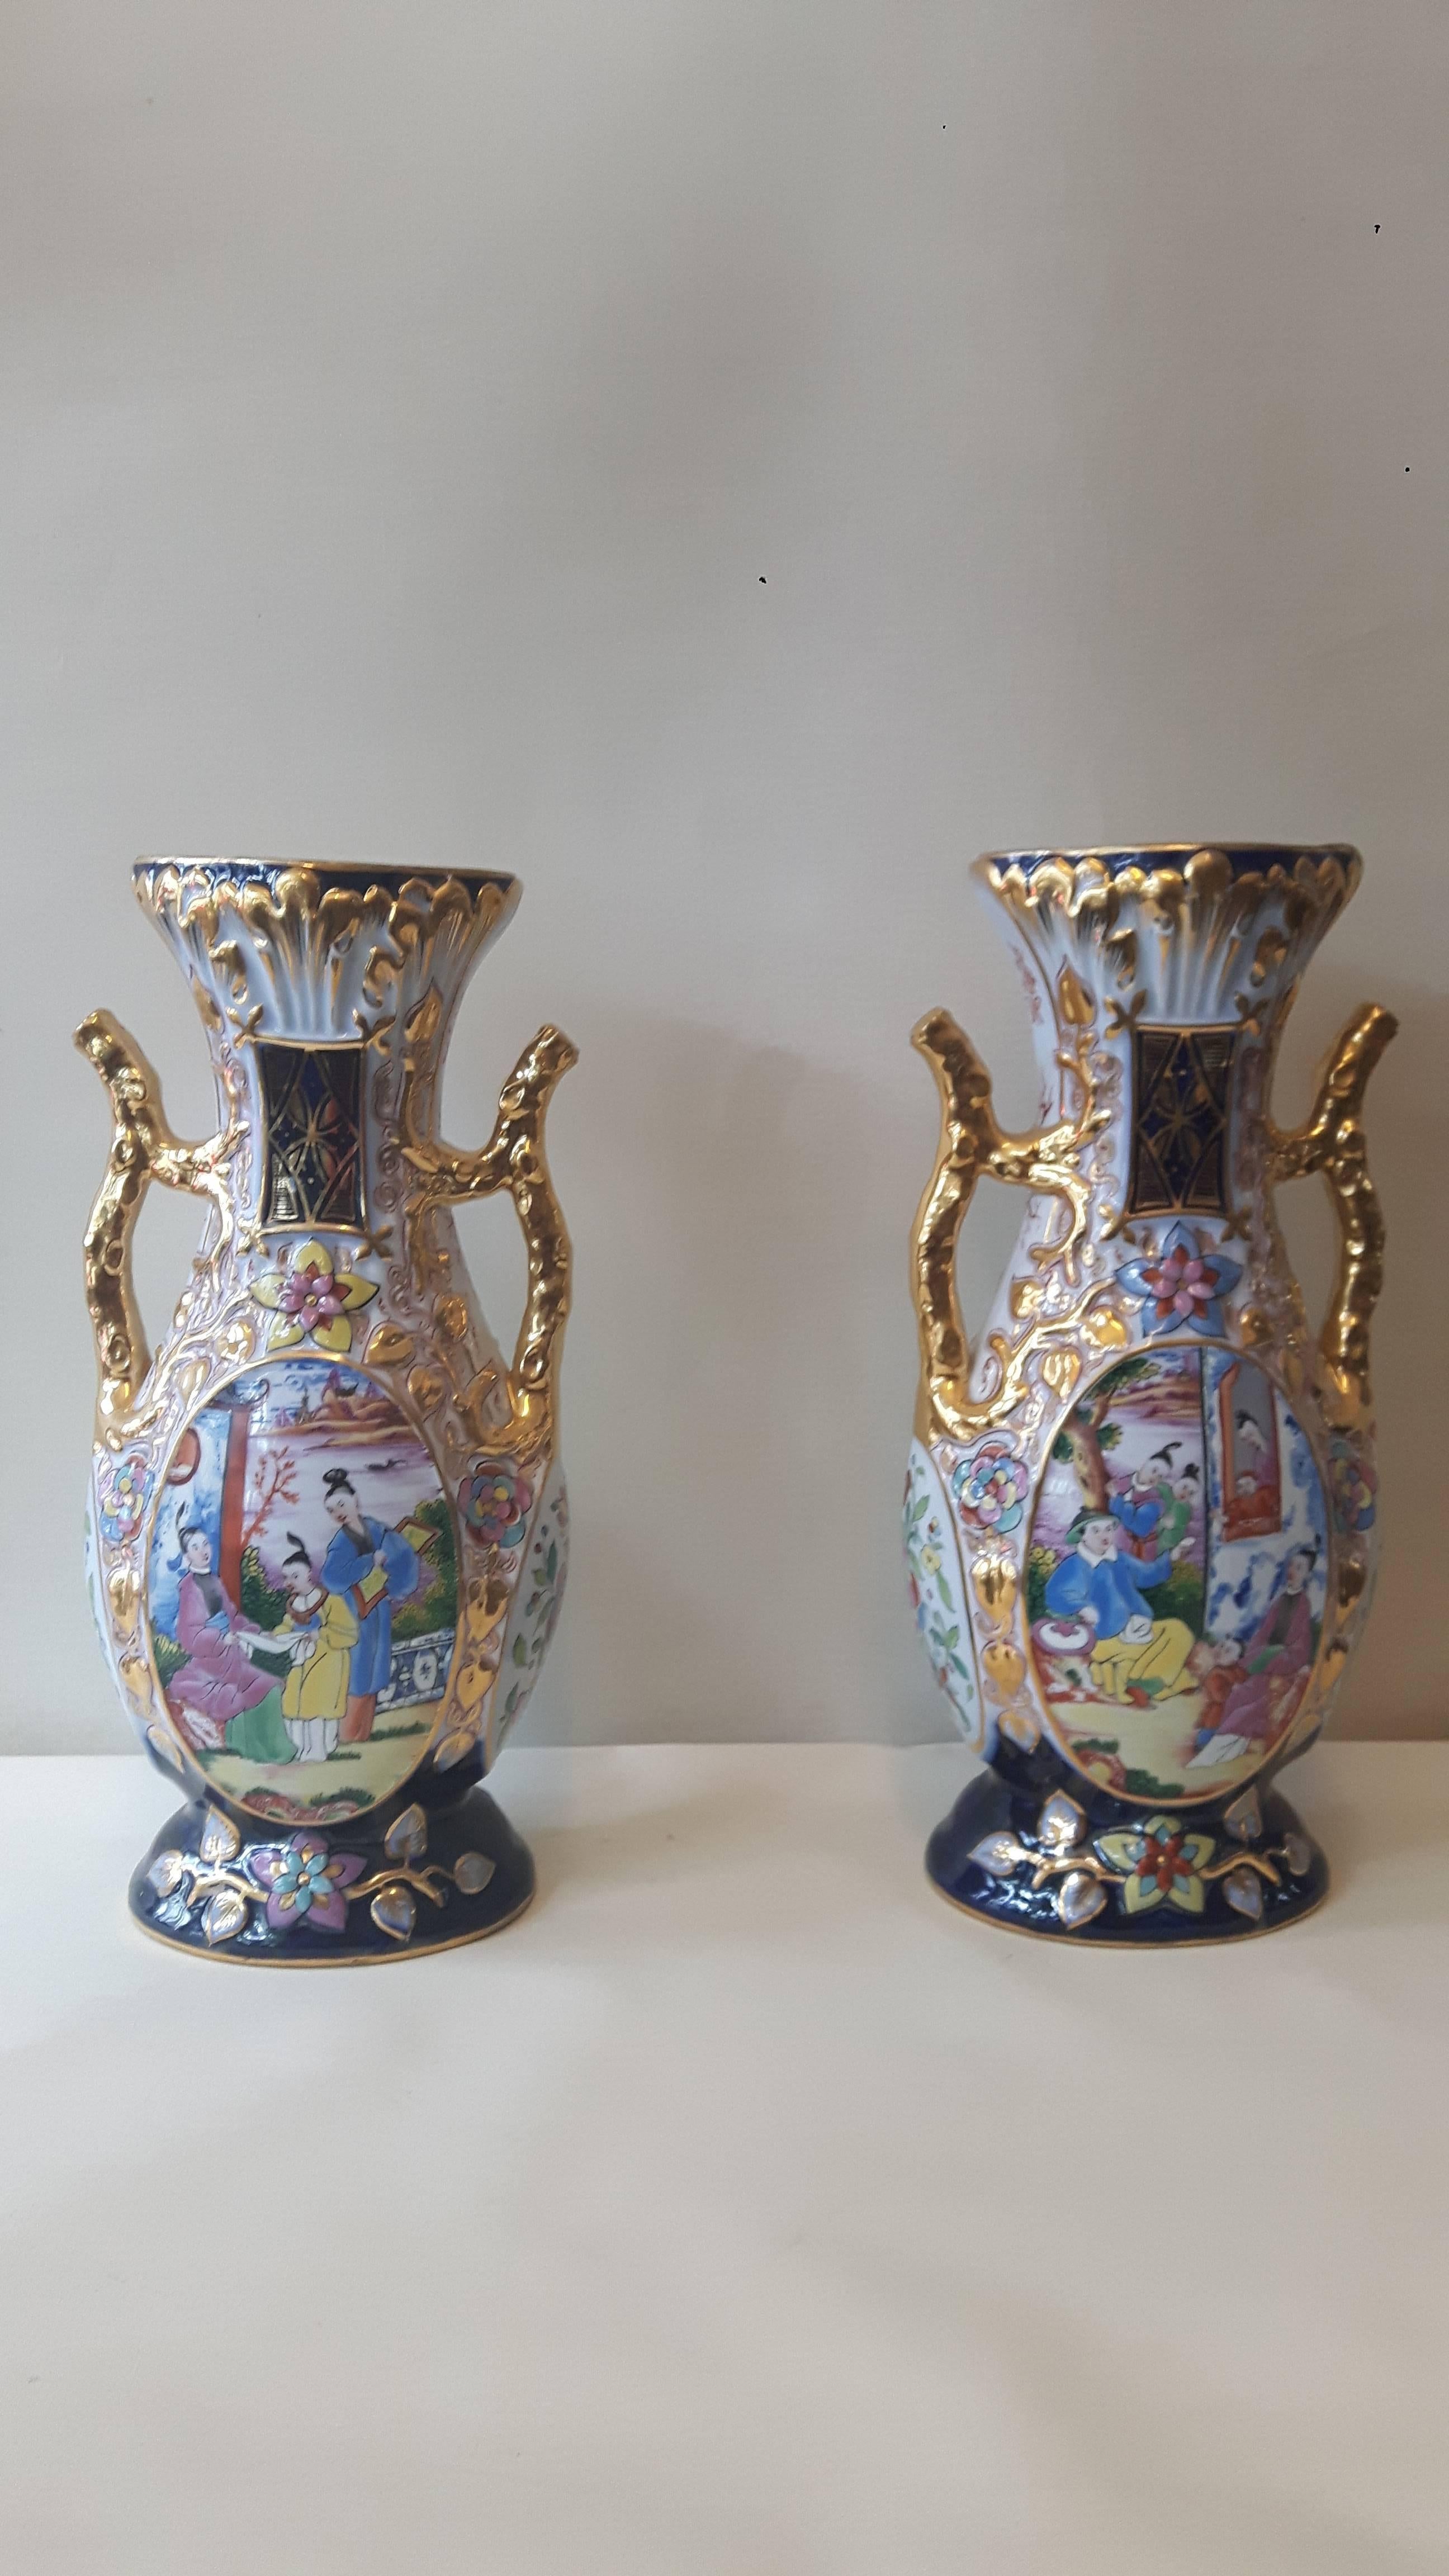 Paire de vases en porcelaine de Samson Paris très ornés, entièrement peints à la main à la manière de la chinoiserie cantonaise, fortement dorés, vers 1880.